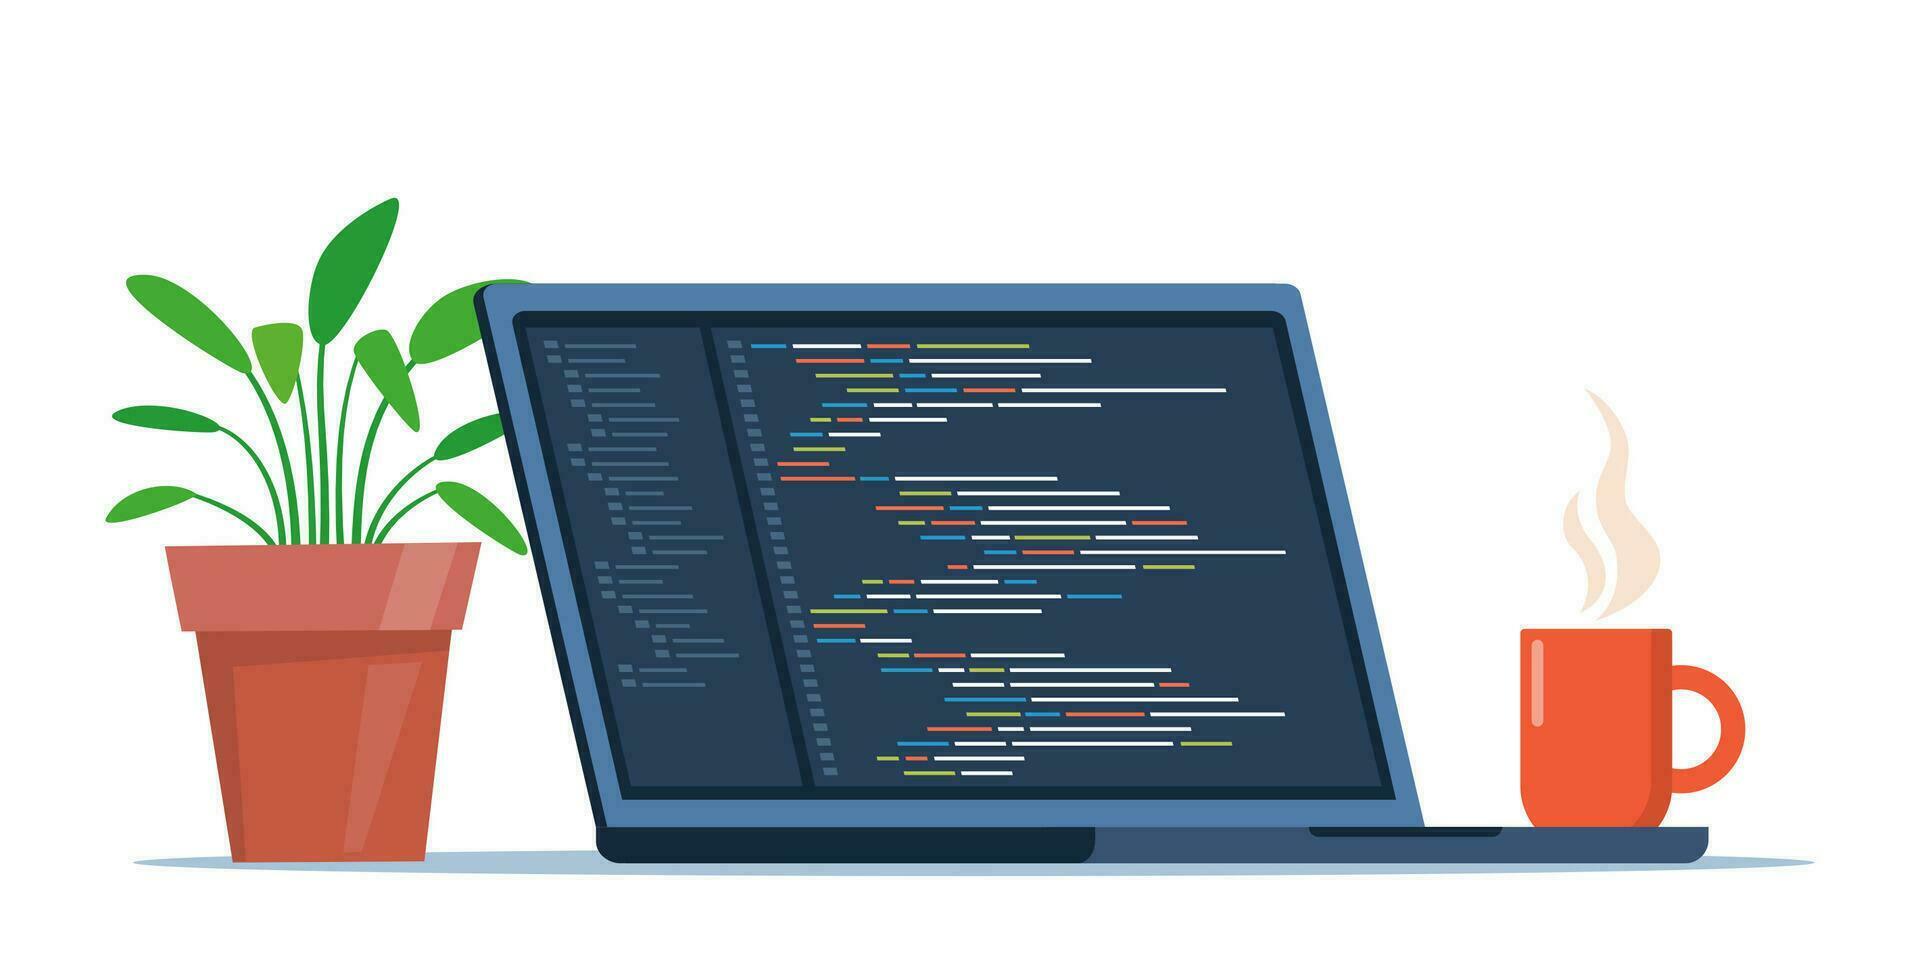 bärbar dator med kopp av kaffe och växt i pott. arbetsplats av kodare, uppkopplad programmerare. kodning och programmering, utvecklande webbplatser använder sig av särskild språk. vektor illustration.